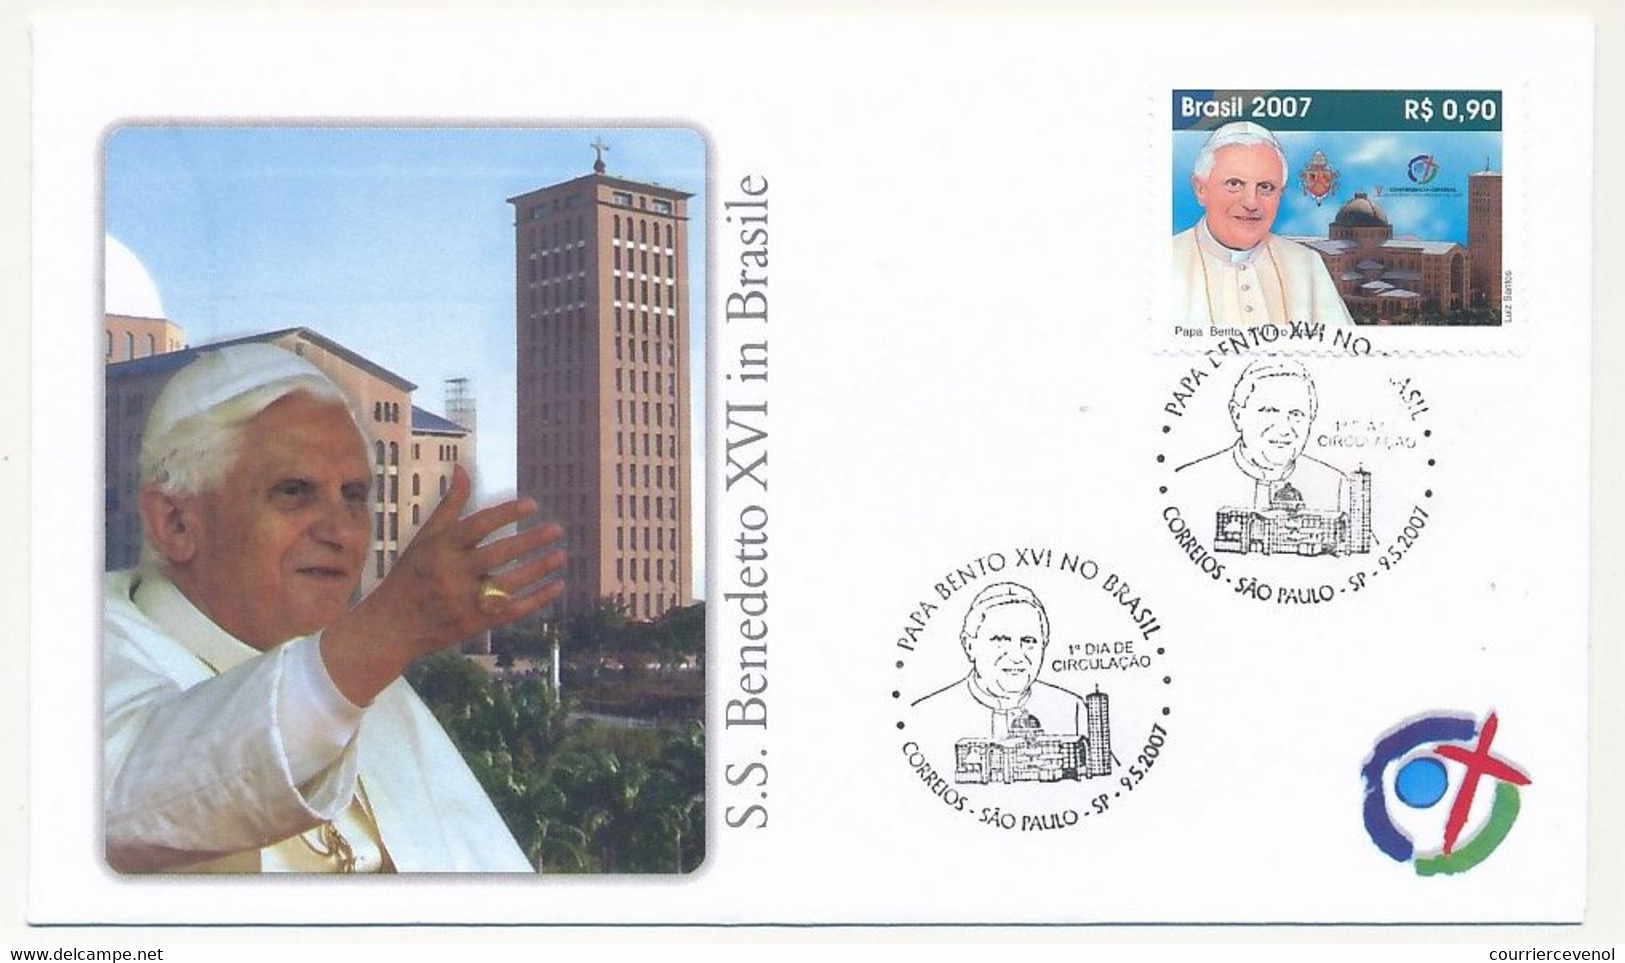 BRESIL - 7 Enveloppes Illustrées - Voyage Du Pape Benoit XVI Au Brésil - 2007 - Covers & Documents